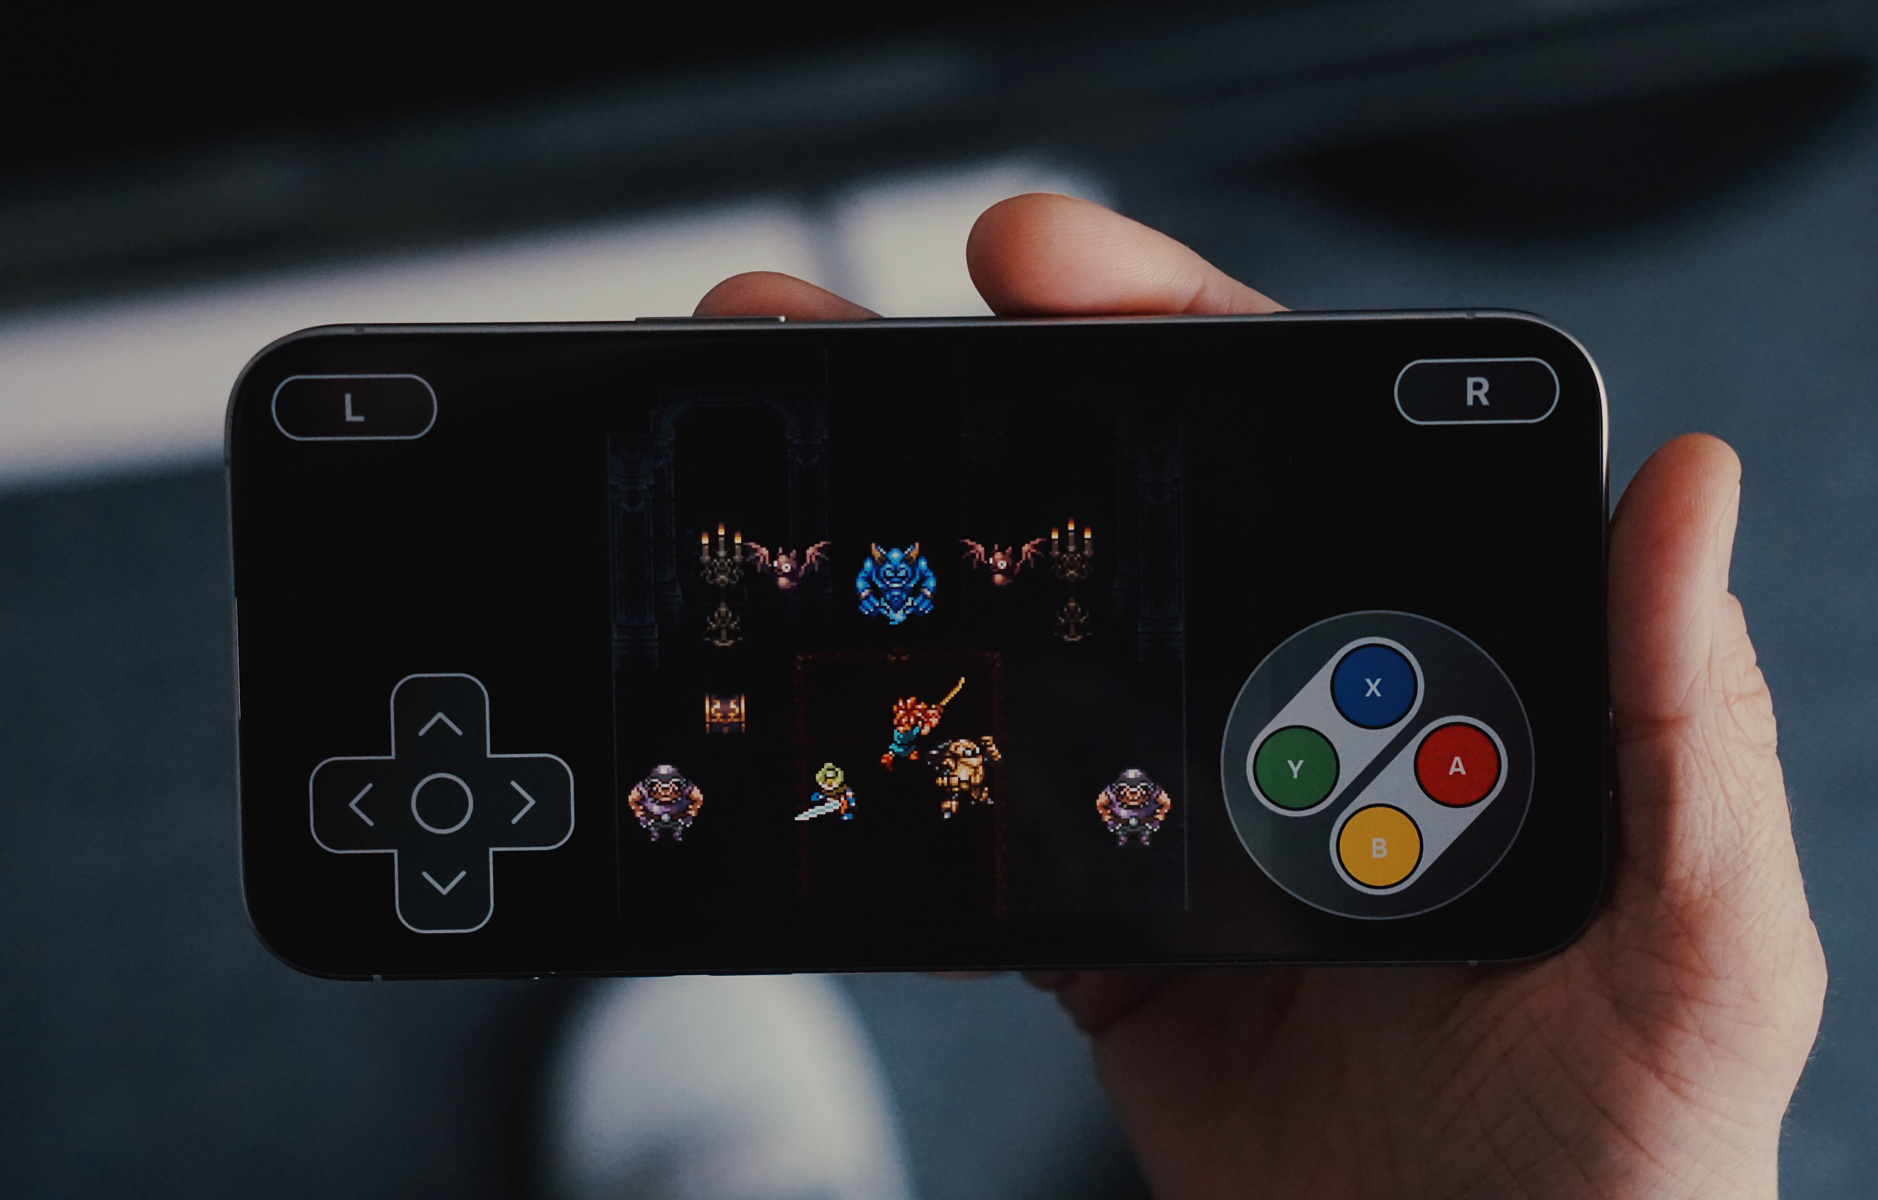 Das ist ein Bild von einer Hand, die ein Smartphone hält, auf dessen Bildschirm ein Retro-Videospiel mit Pixelgrafik läuft. Auf dem Bildschirm sind Spielelemente zu sehen, darunter eine Spielfigur mit einem Schwert, Gegner und ein virtuelles Gamepad mit Tasten.